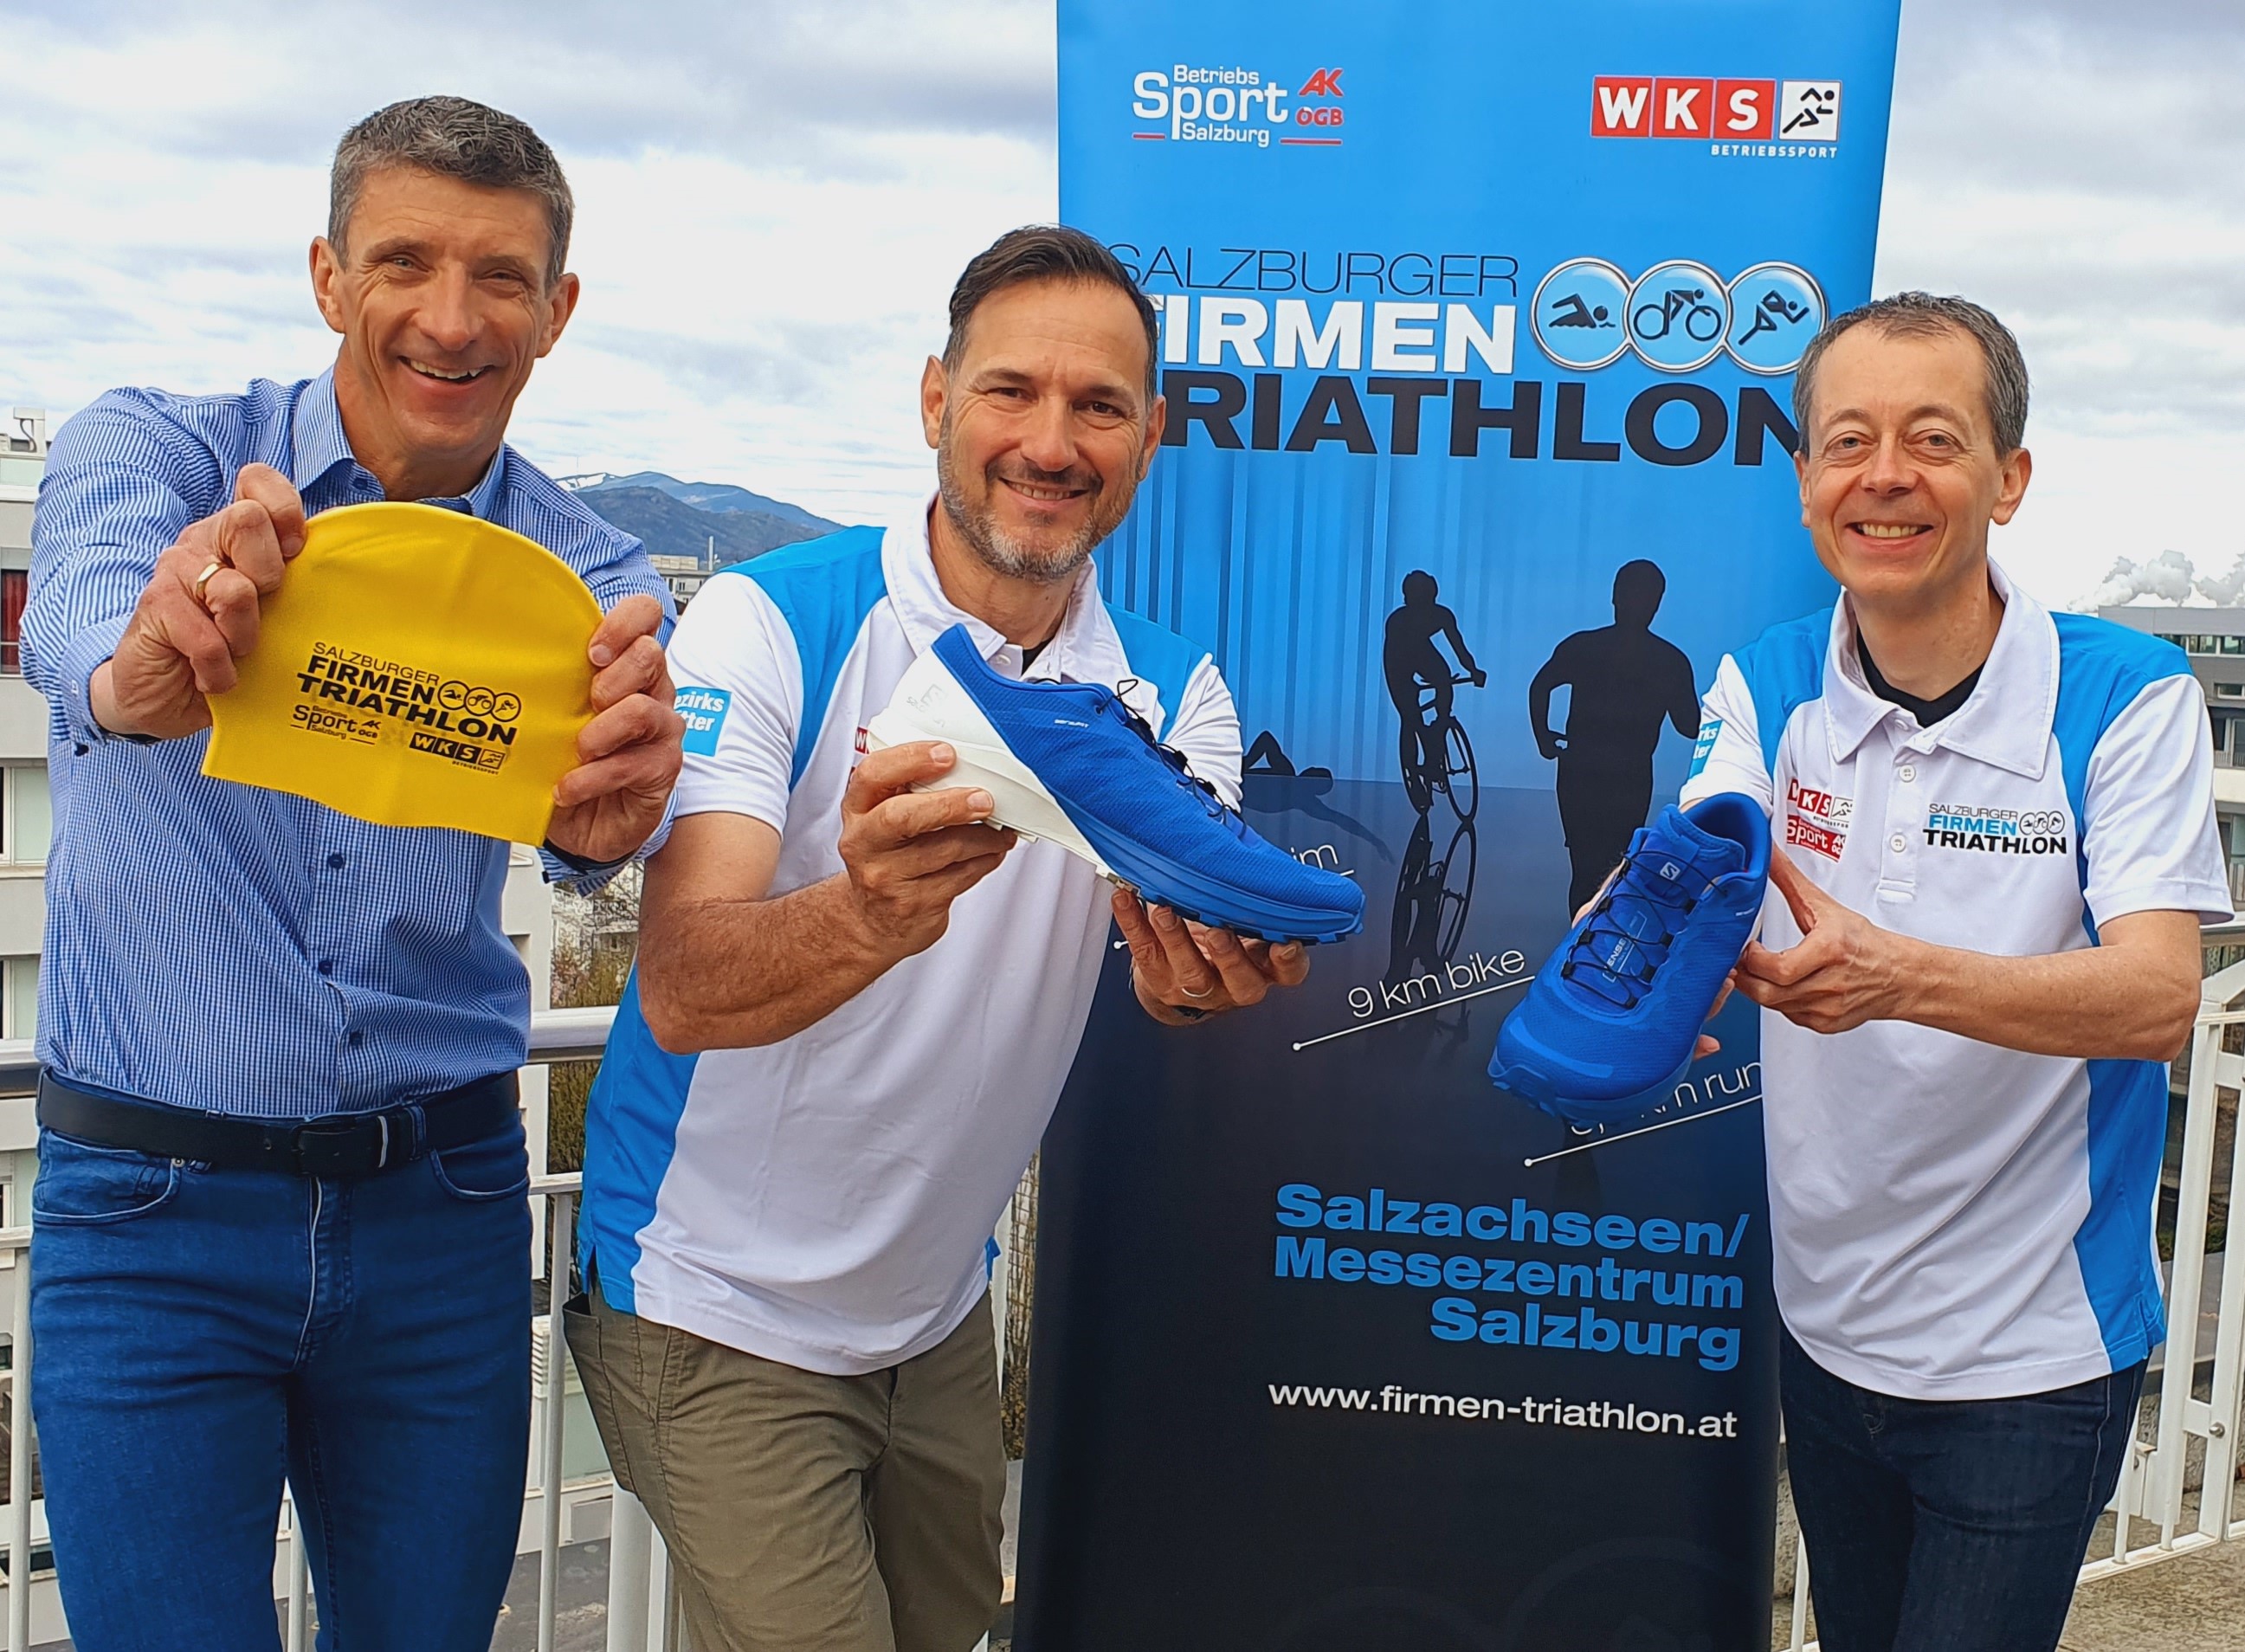 Salzburger Firmen Triathlon- das Organisationsteam hinter der Veranstaltung